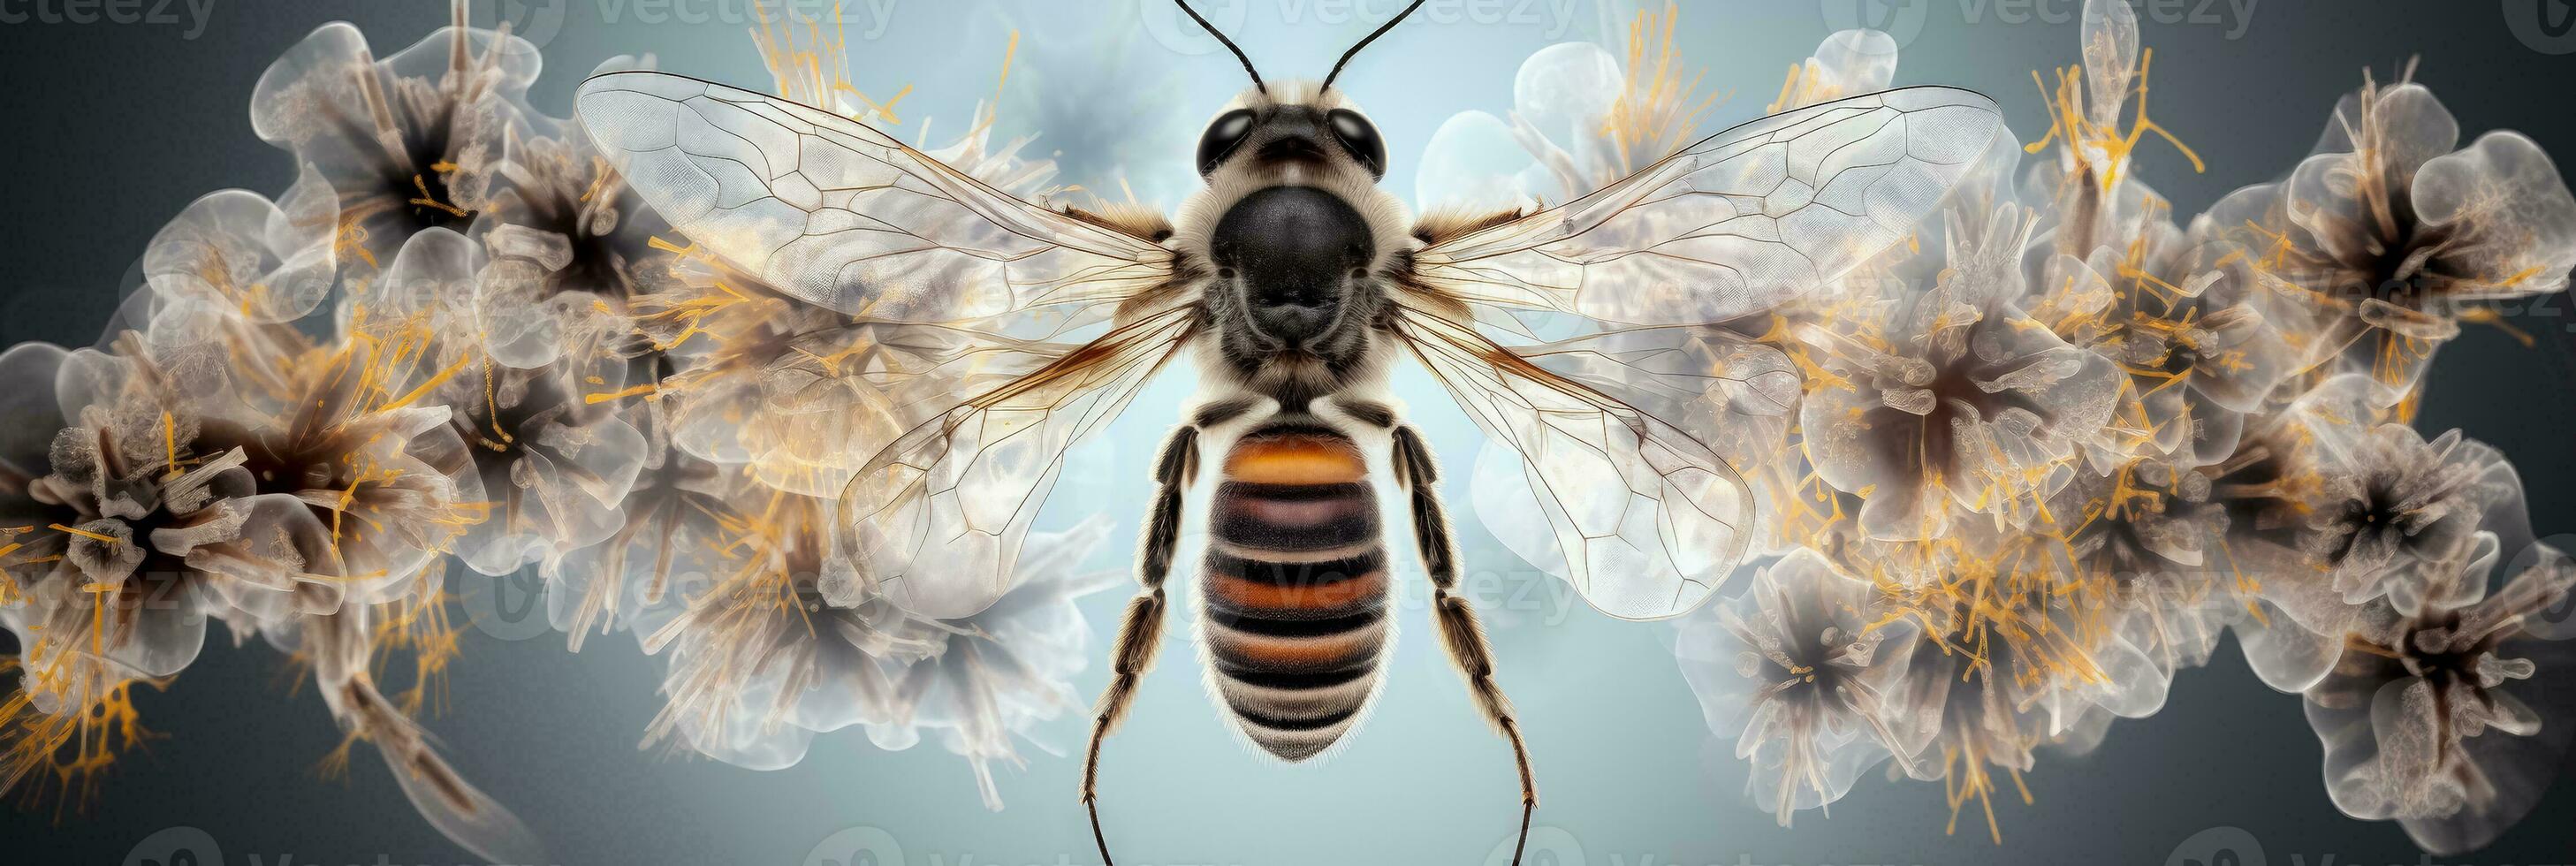 Honigbienen Thorax und Flügel Joint x Strahl Bild Hintergrund mit leeren Raum zum Text foto